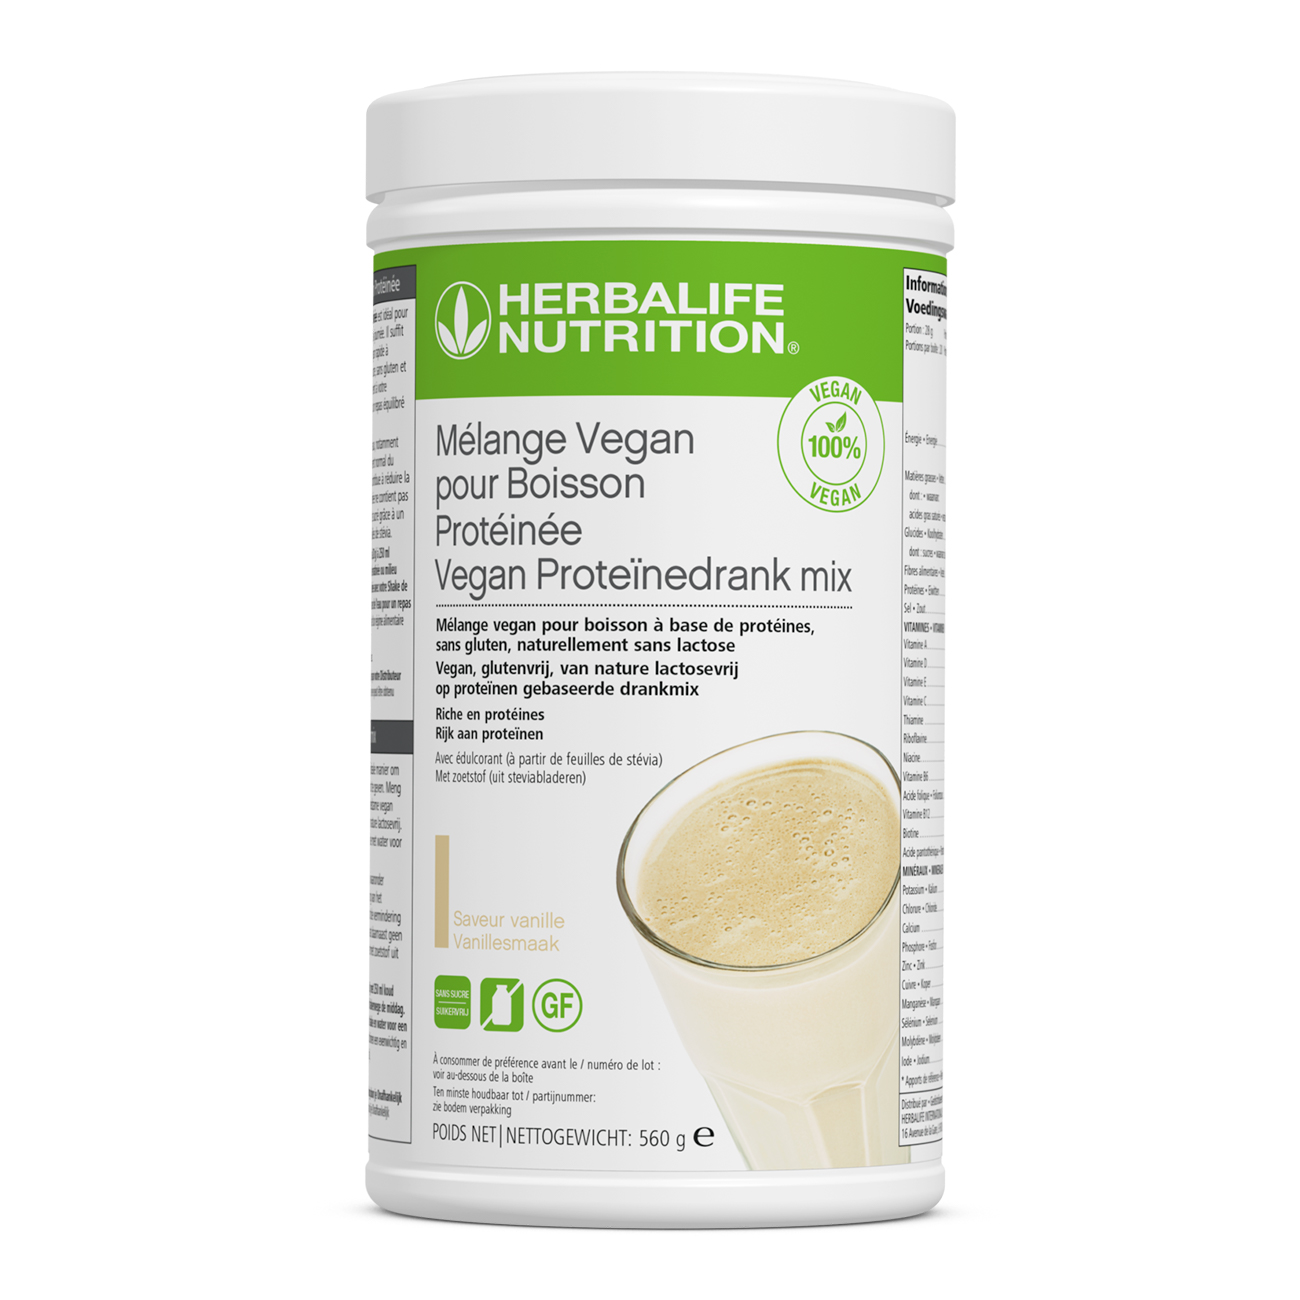 Le Mélange Vegan pour Boisson Protéinée est un excellent moyen d'augmenter votre apport en protéines tout au long de la journée. À combiner avec votre shake de Formula 1 préféré pour un repas équilibré en nutriments, riche en protéines et avec une faible teneur en sucres.